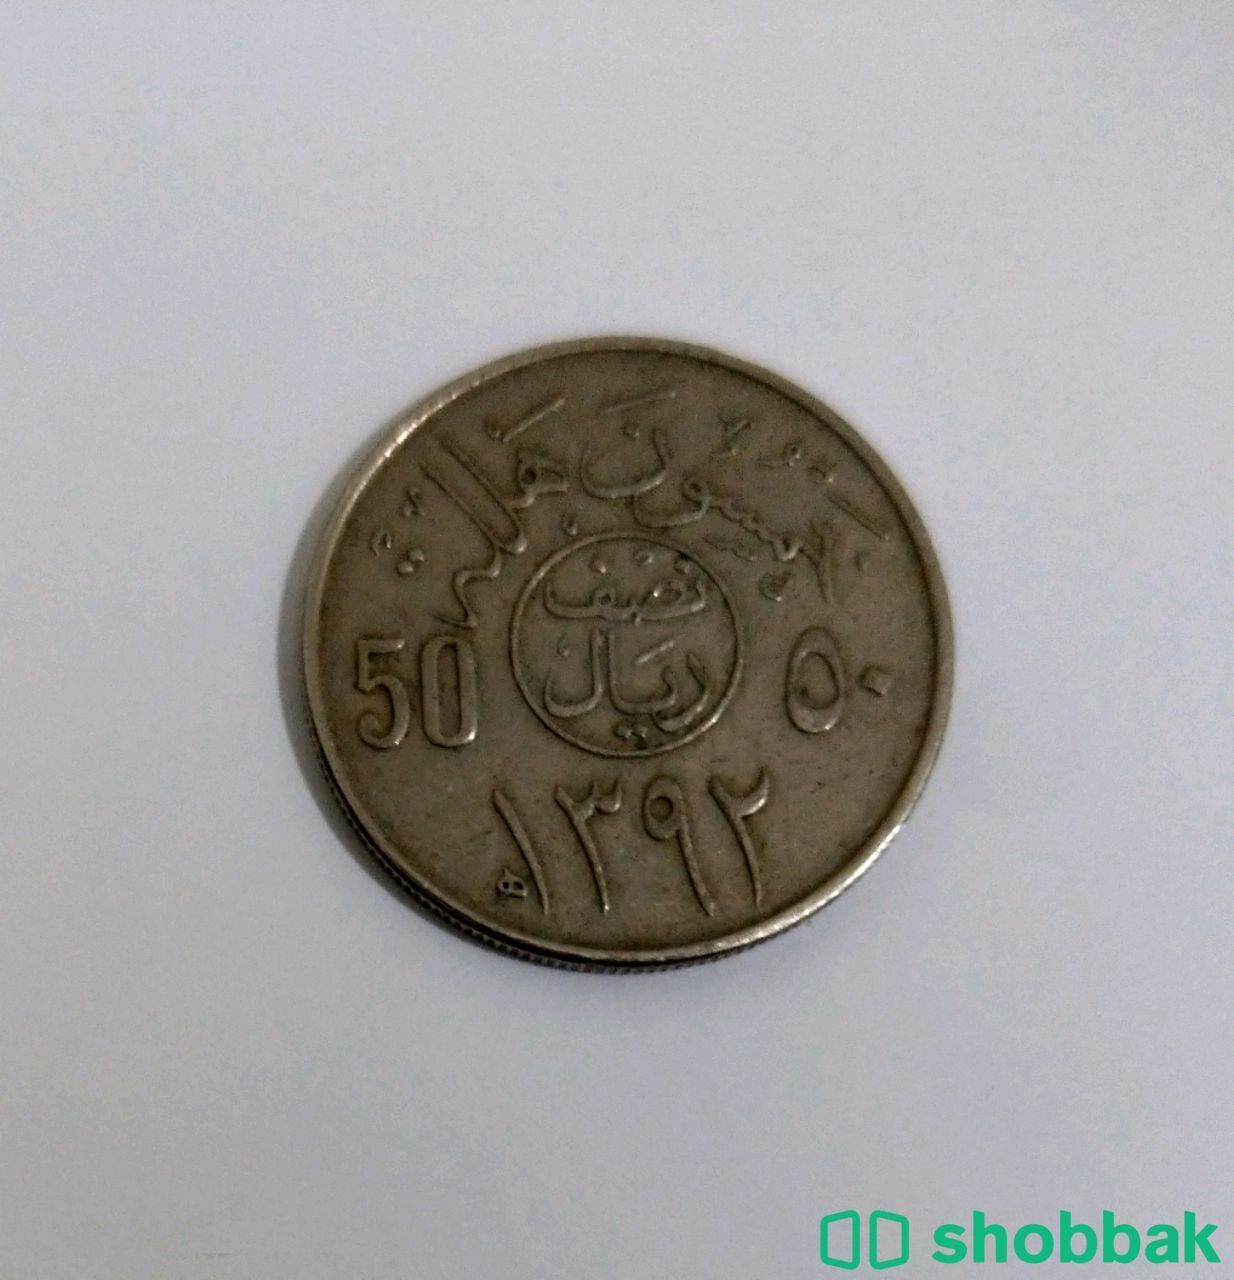 عملة نقدية للمملكة العربية السعودية. شباك السعودية